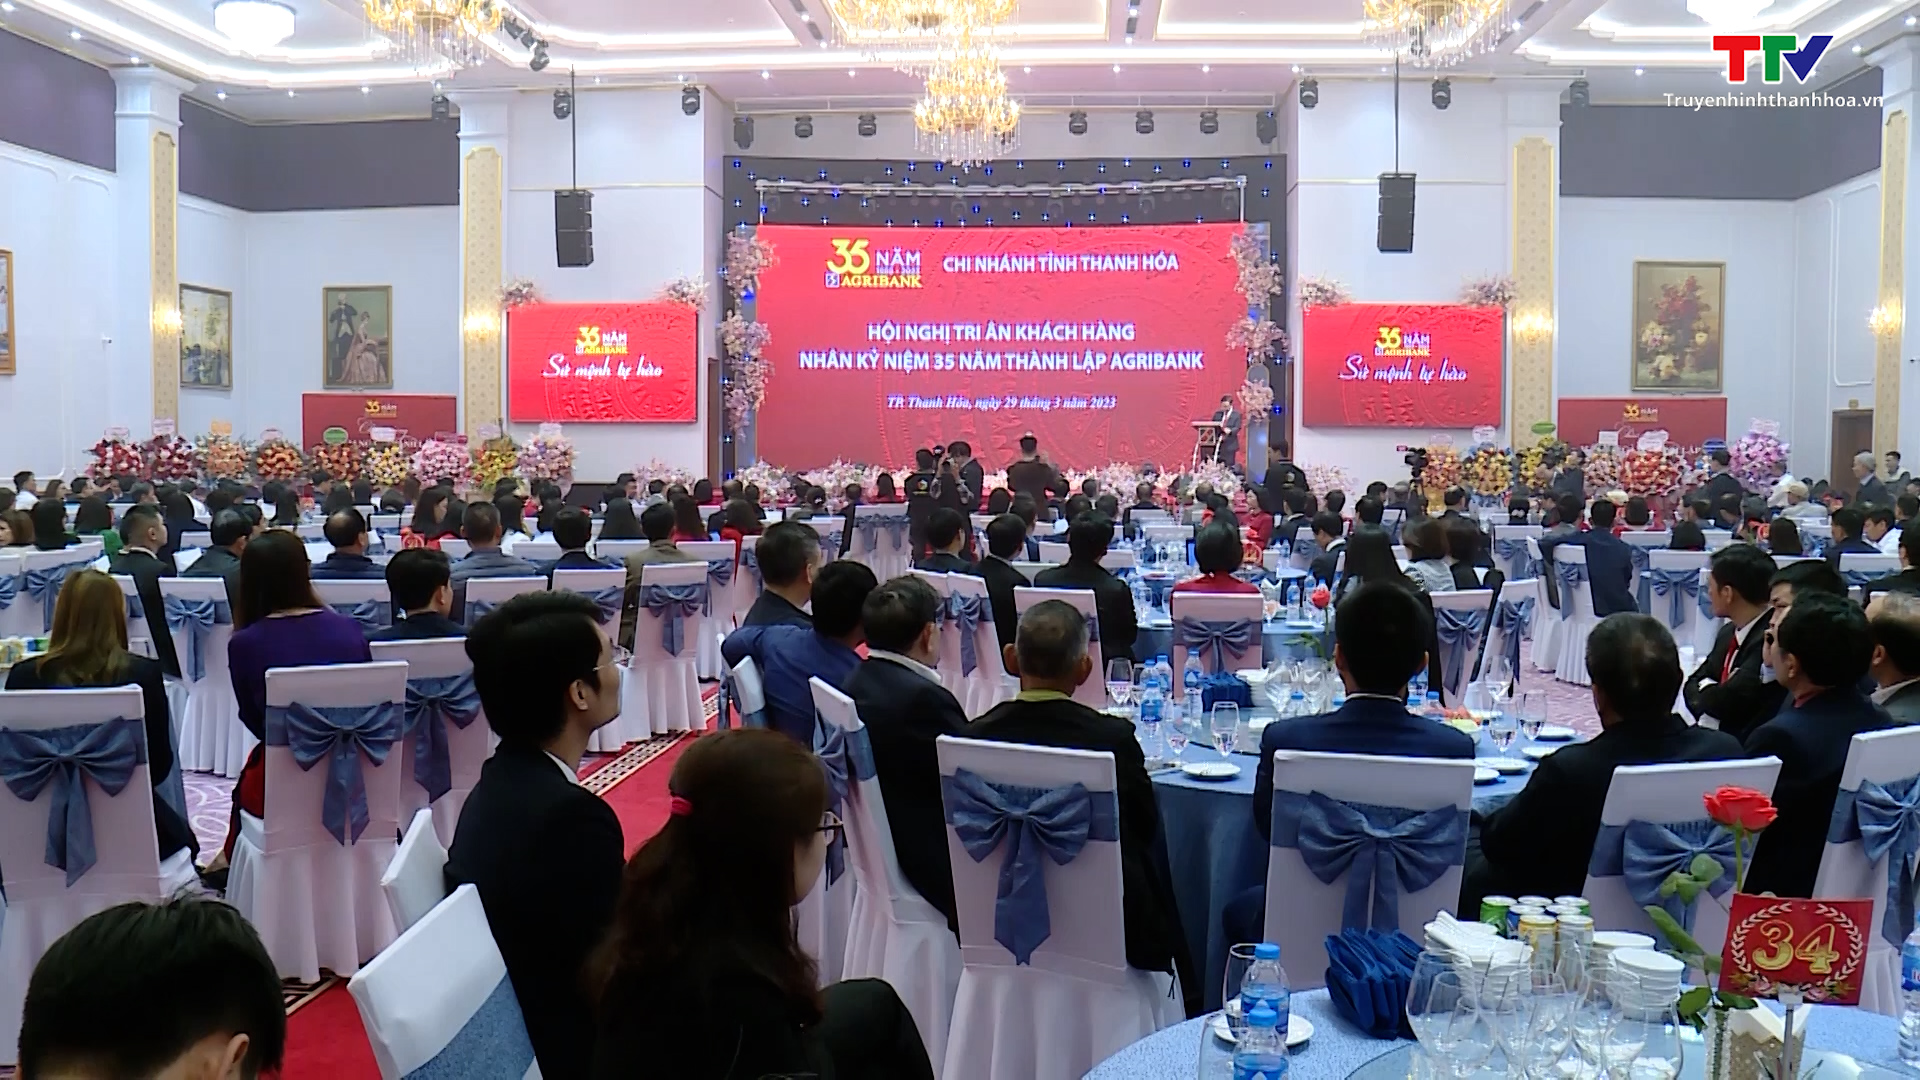 Agribank Thanh Hoá hội nghị tri ân khách hàng nhân kỷ niệm 35 năm thành lập - Ảnh 2.